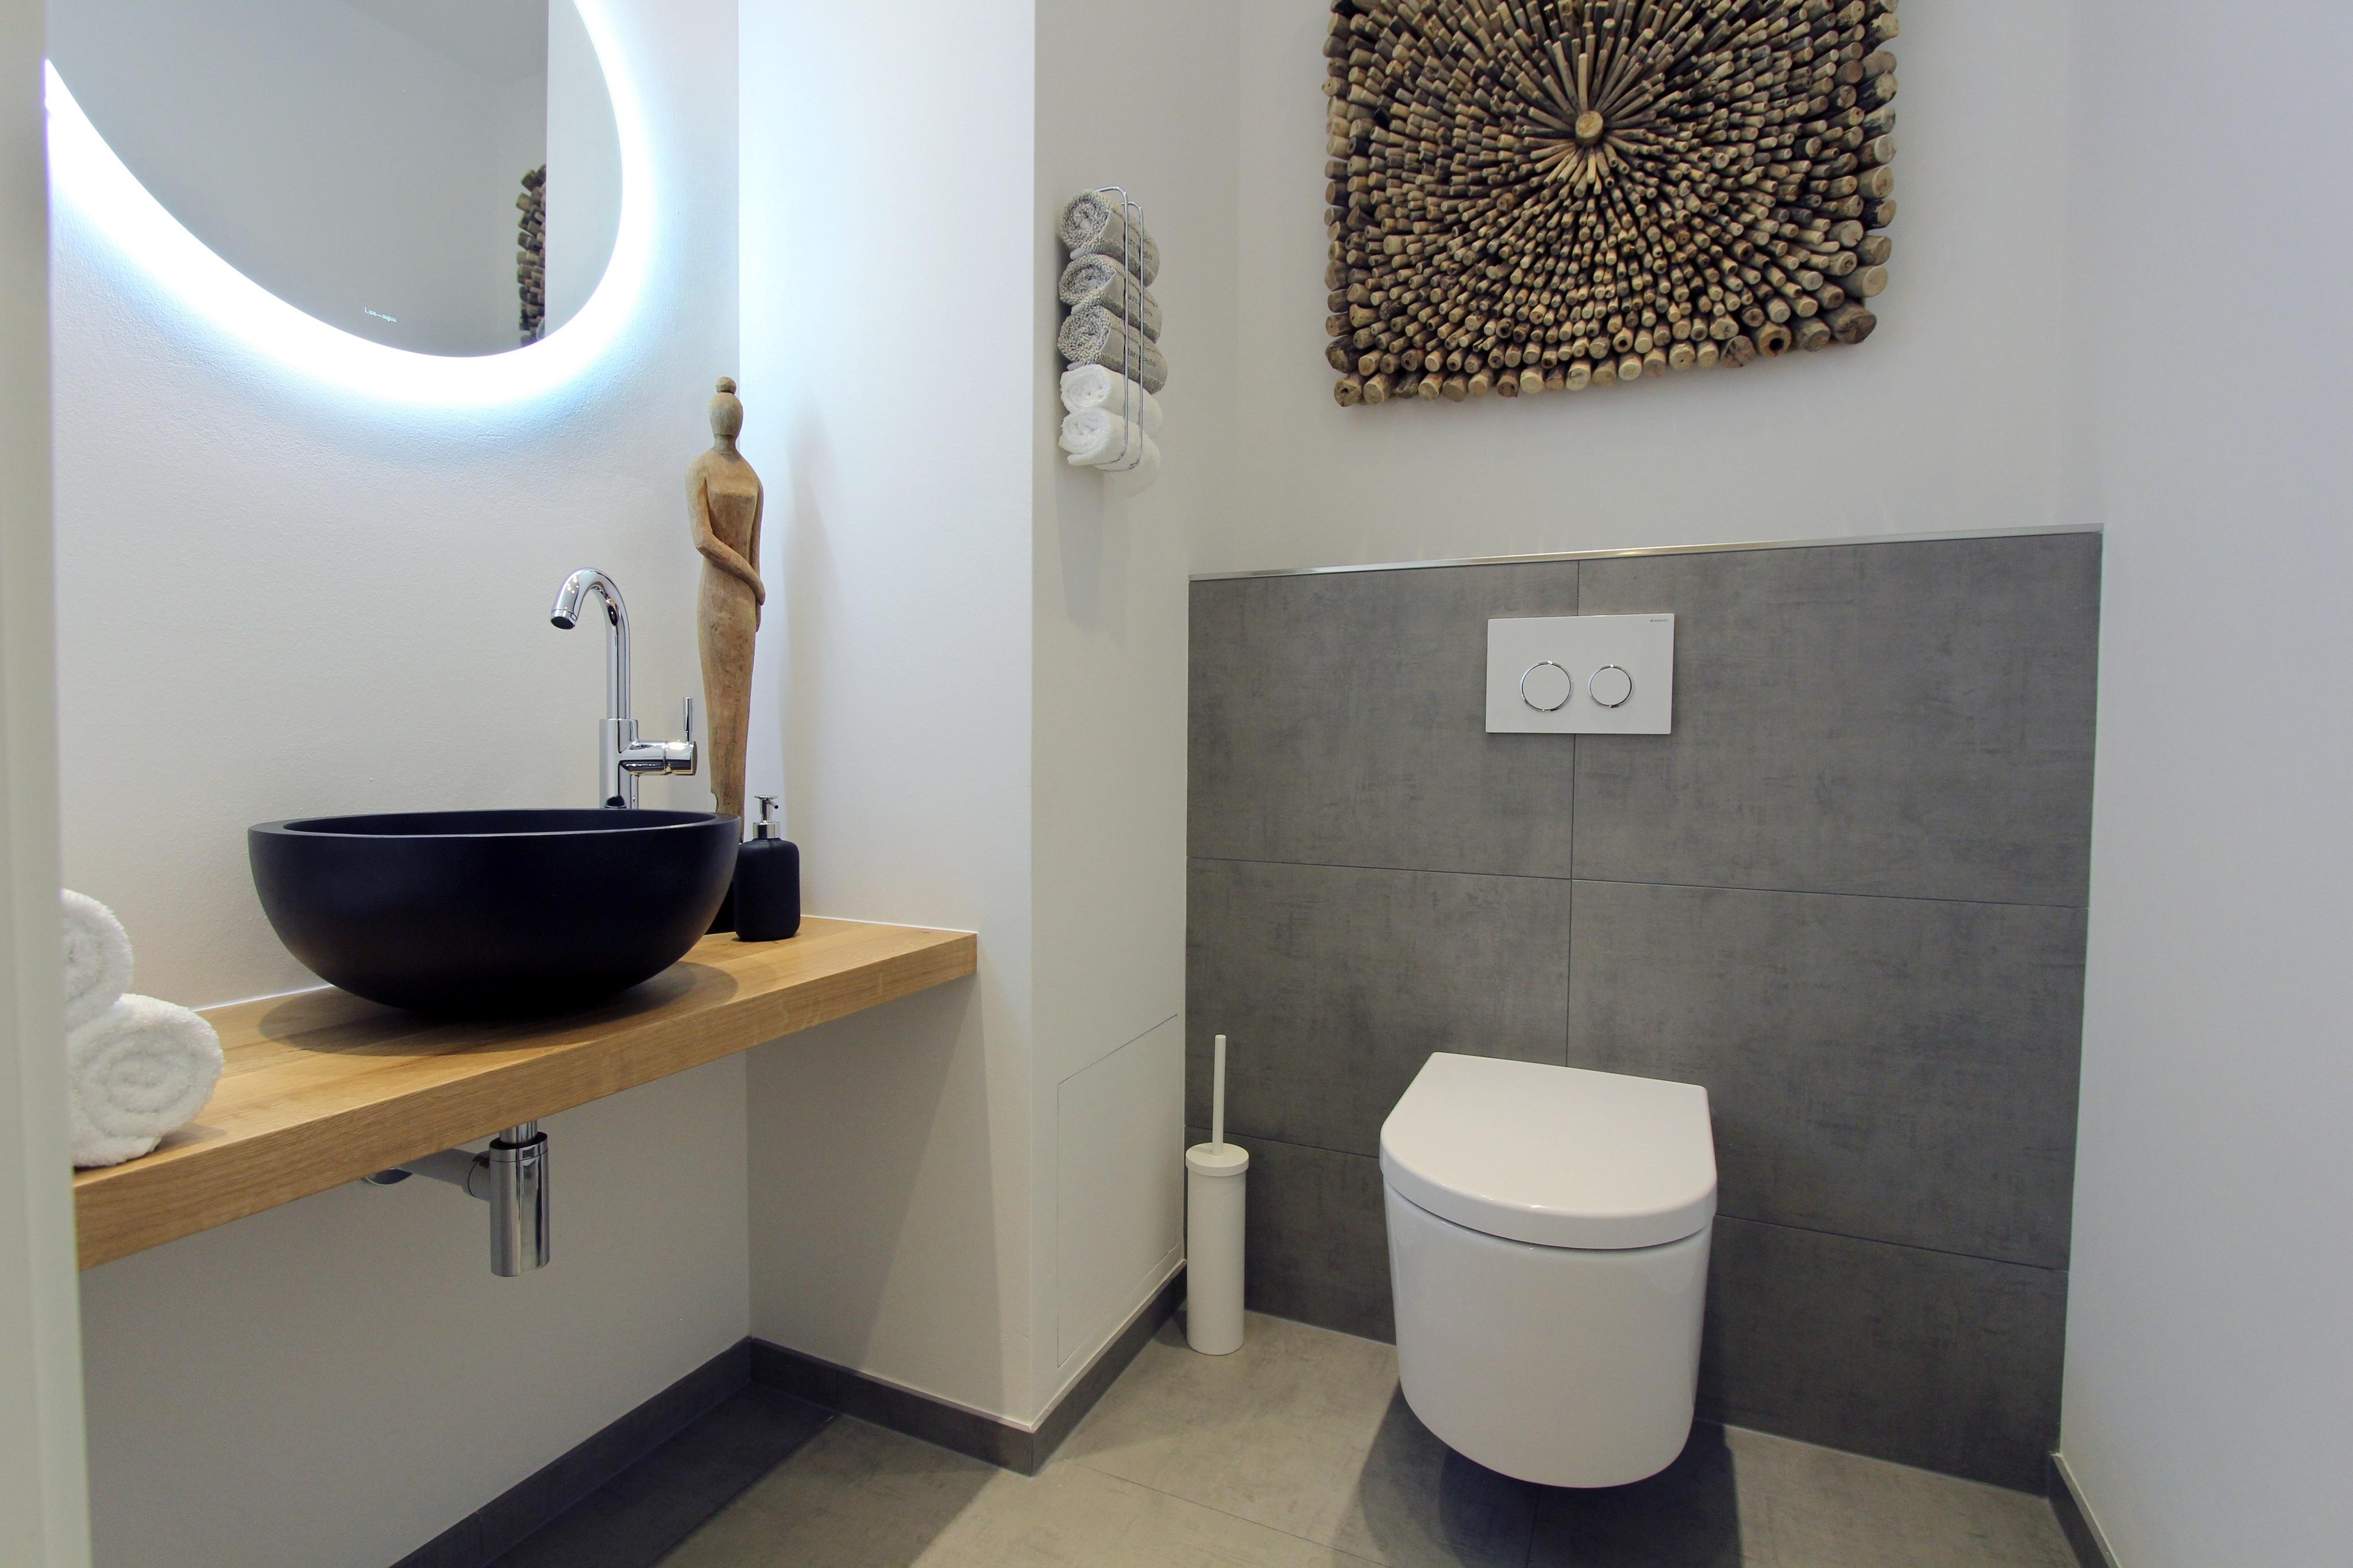 Designer Gästetoilette #fliesen #toilette #waschschale #einrichtungsberatung ©Isabella Hemmer